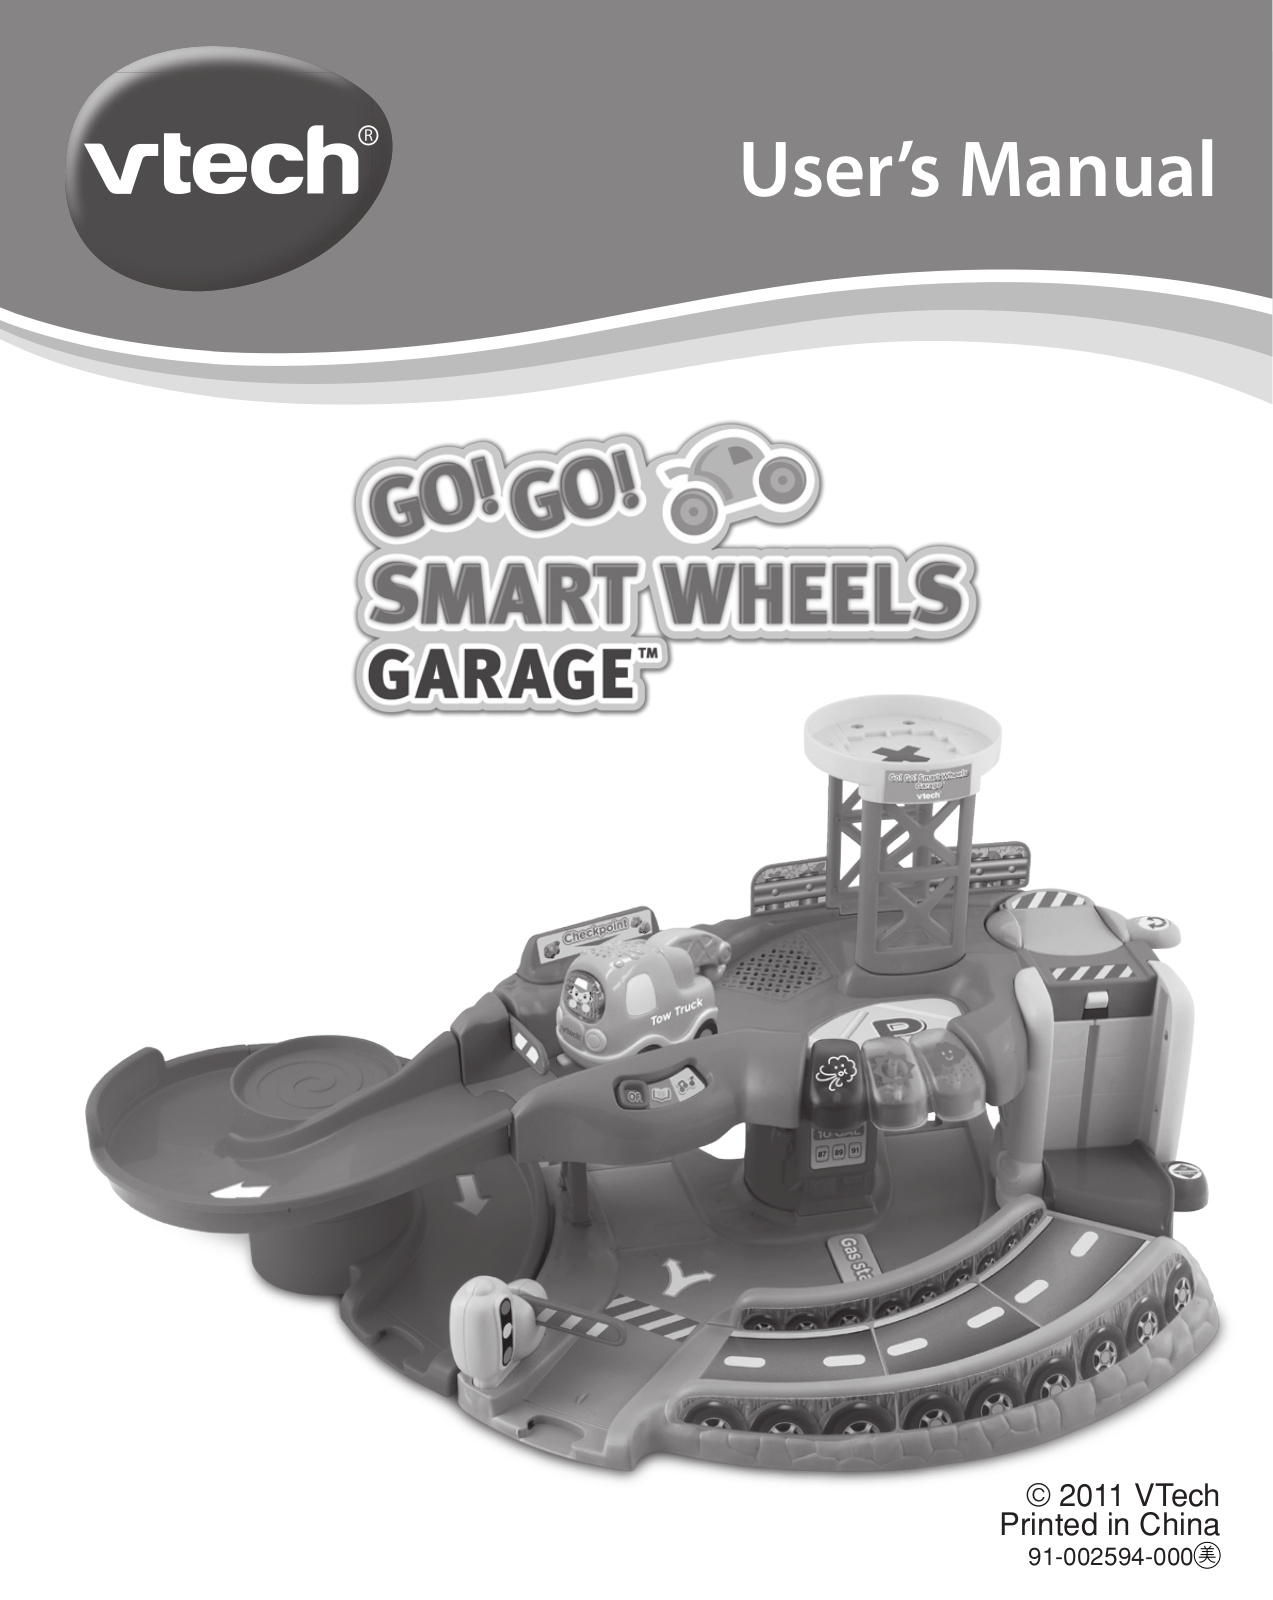 VTech 91-002594-000 User Manual